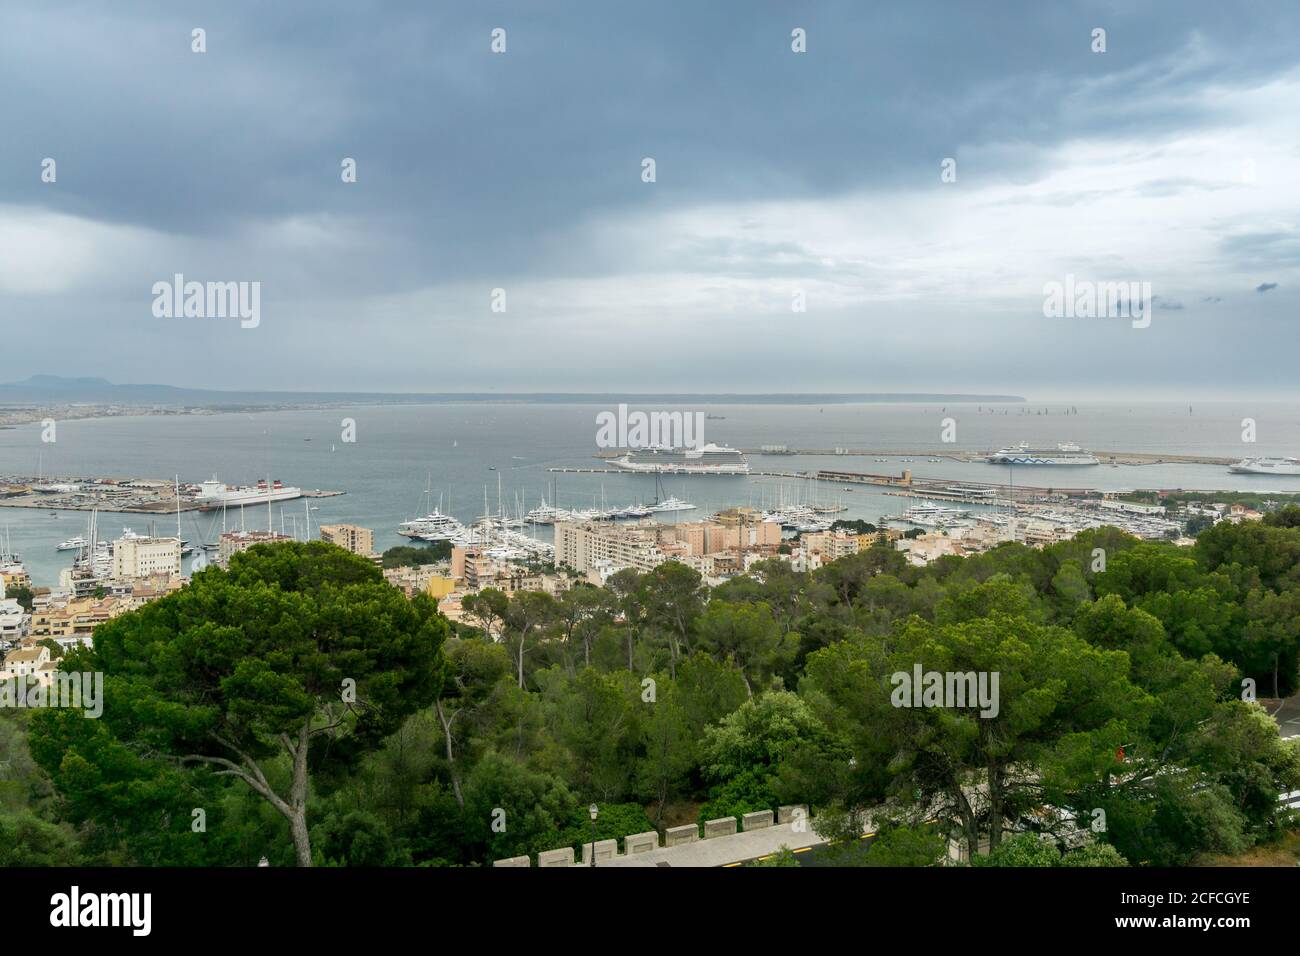 Vista panoramica aerea del Palma de Mallorca Club de mar, Sea club. Baia porto con molte barche a vela e crociere di lusso, Spagna Foto Stock